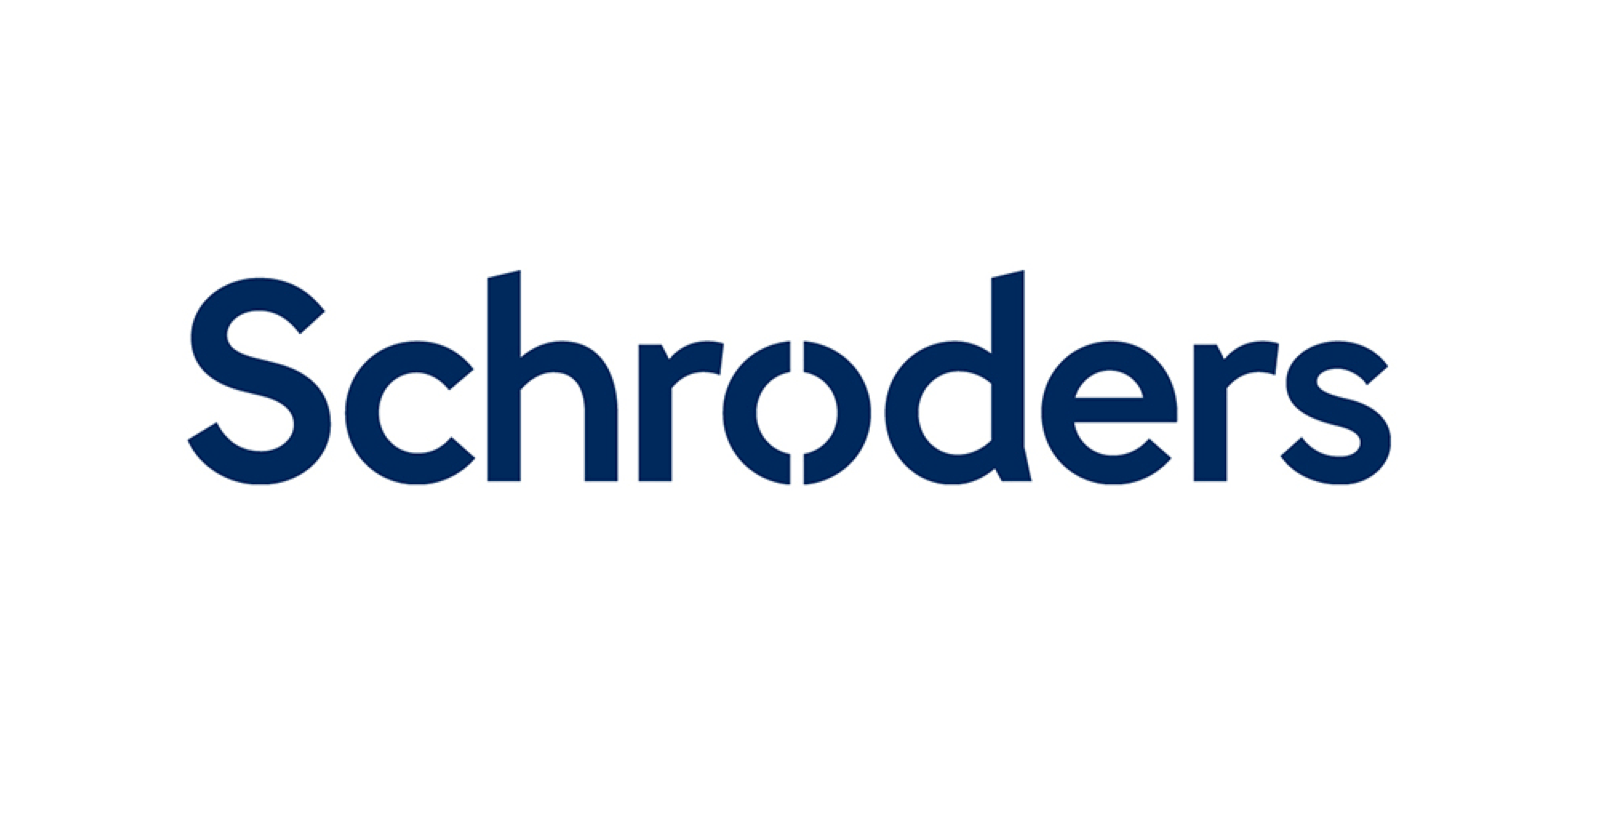 Schroder Real Estate Investment Trust